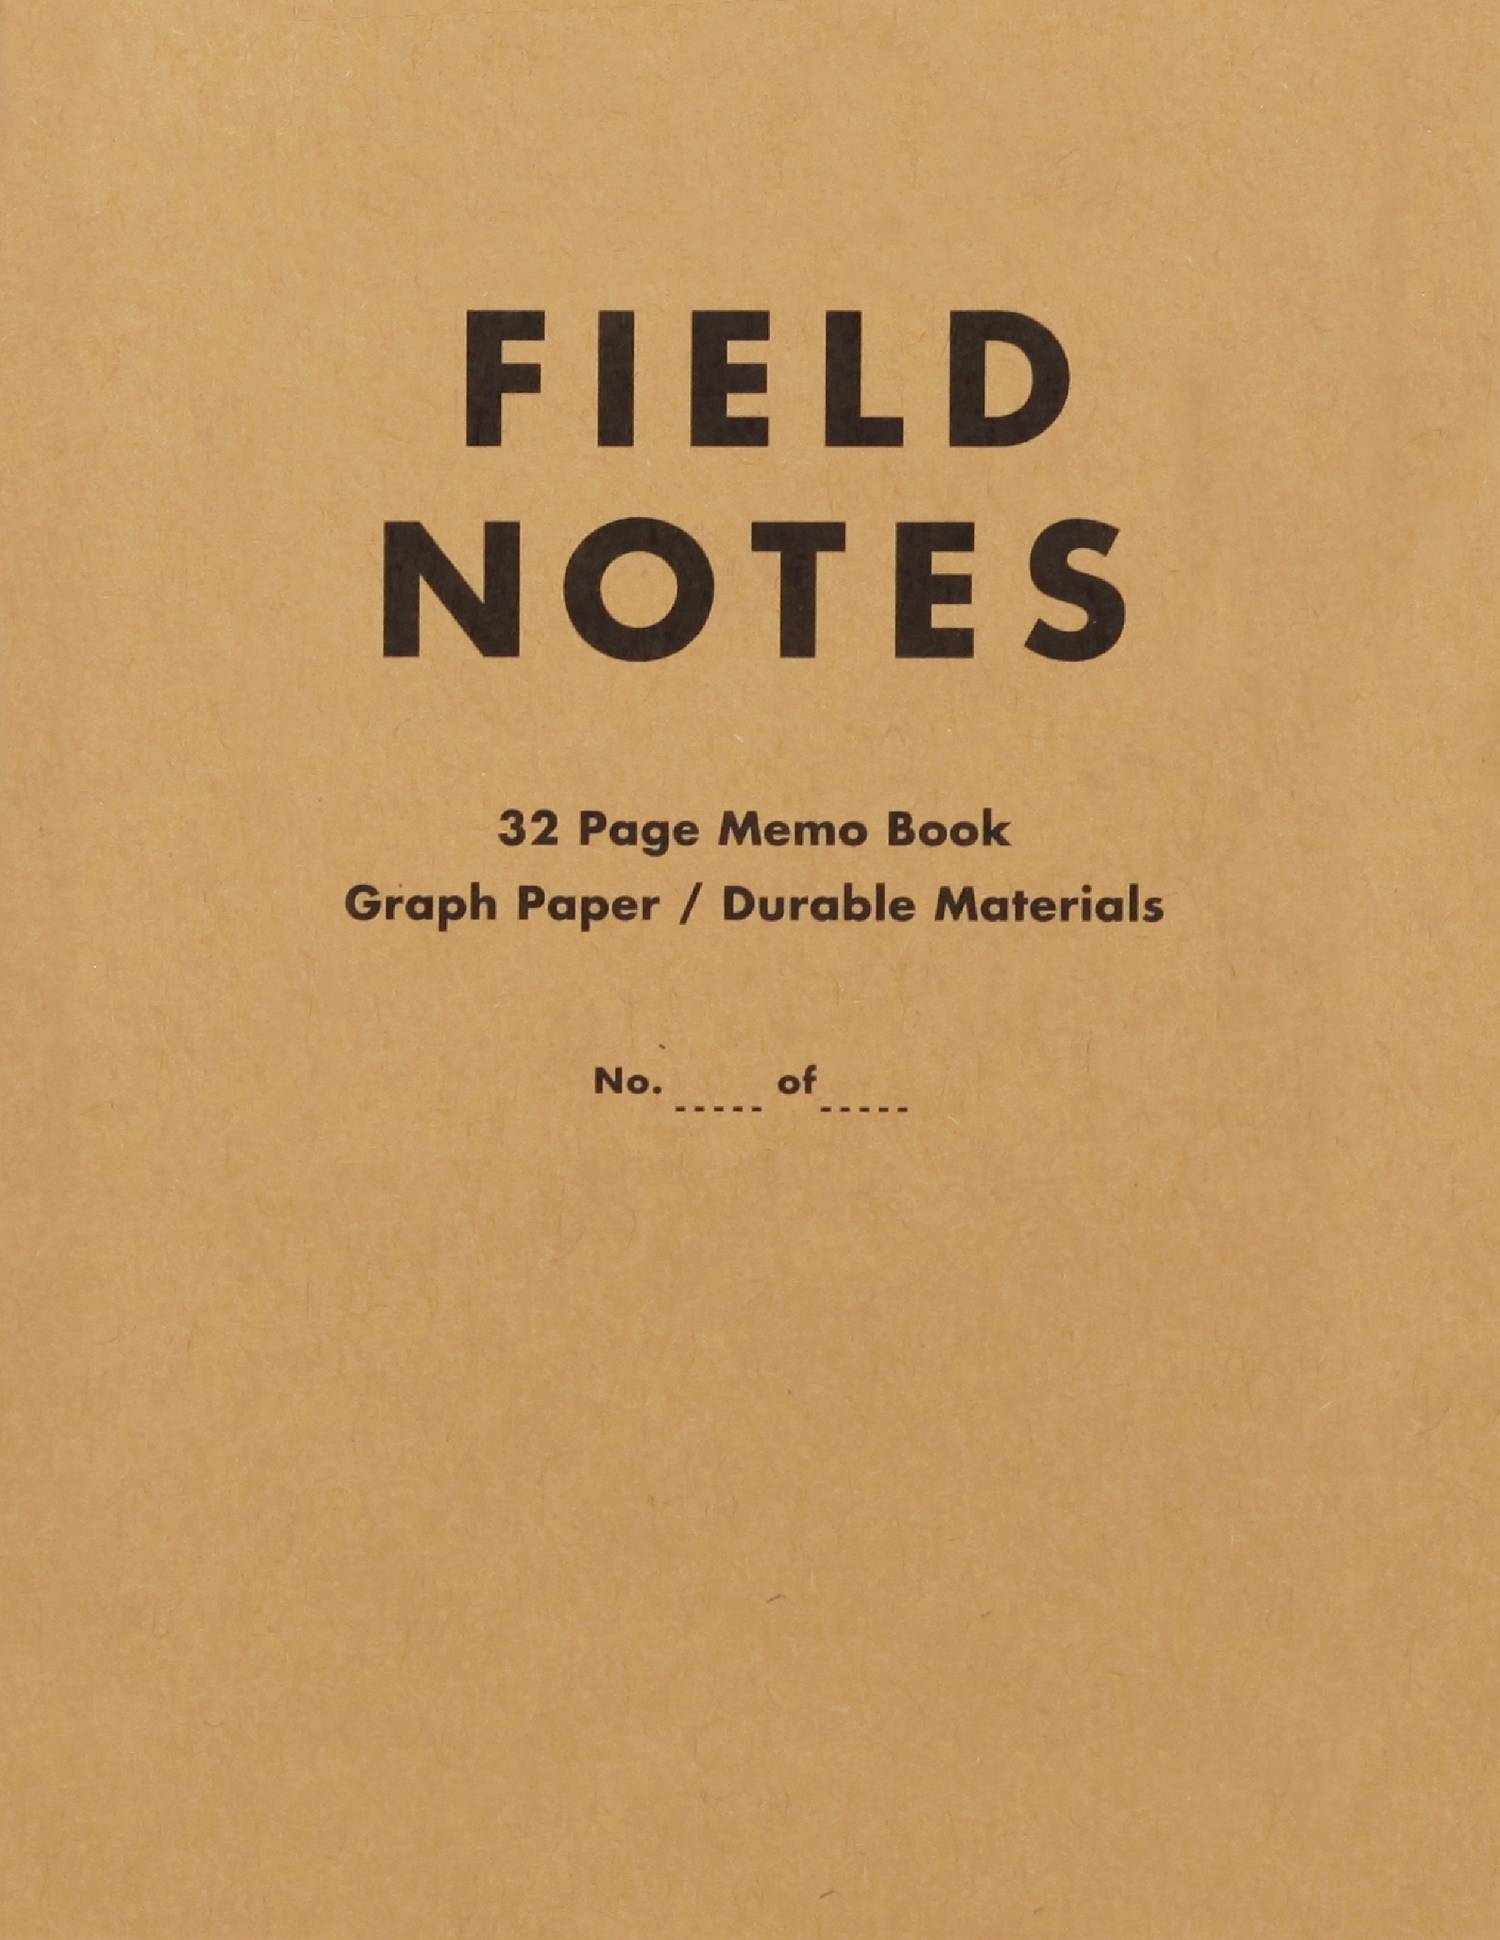 Field Notes. Write field